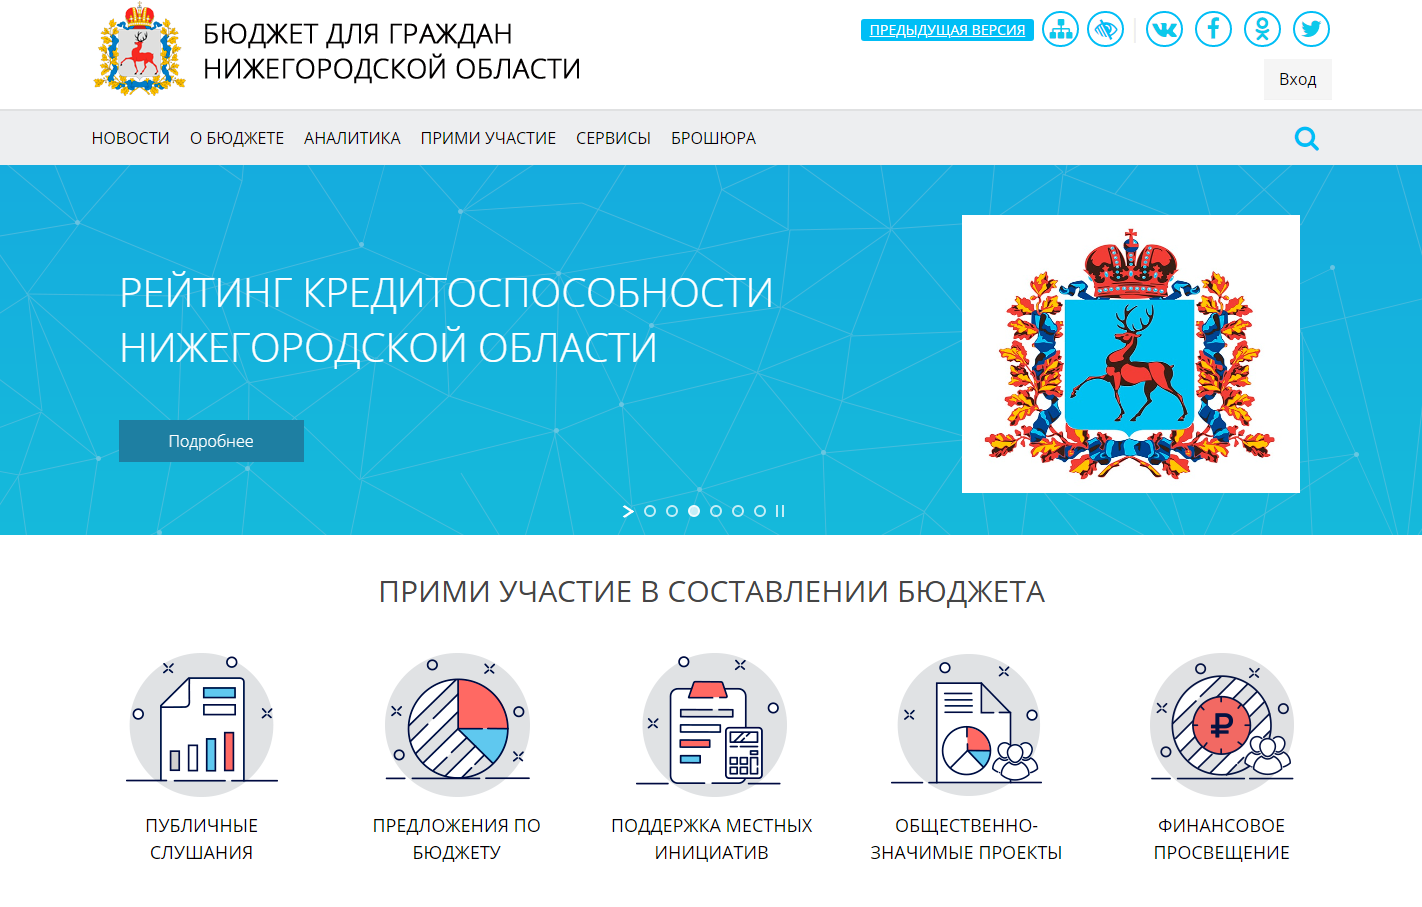 Жителям Нижегородской области предлагают распределить бюджетные деньги 